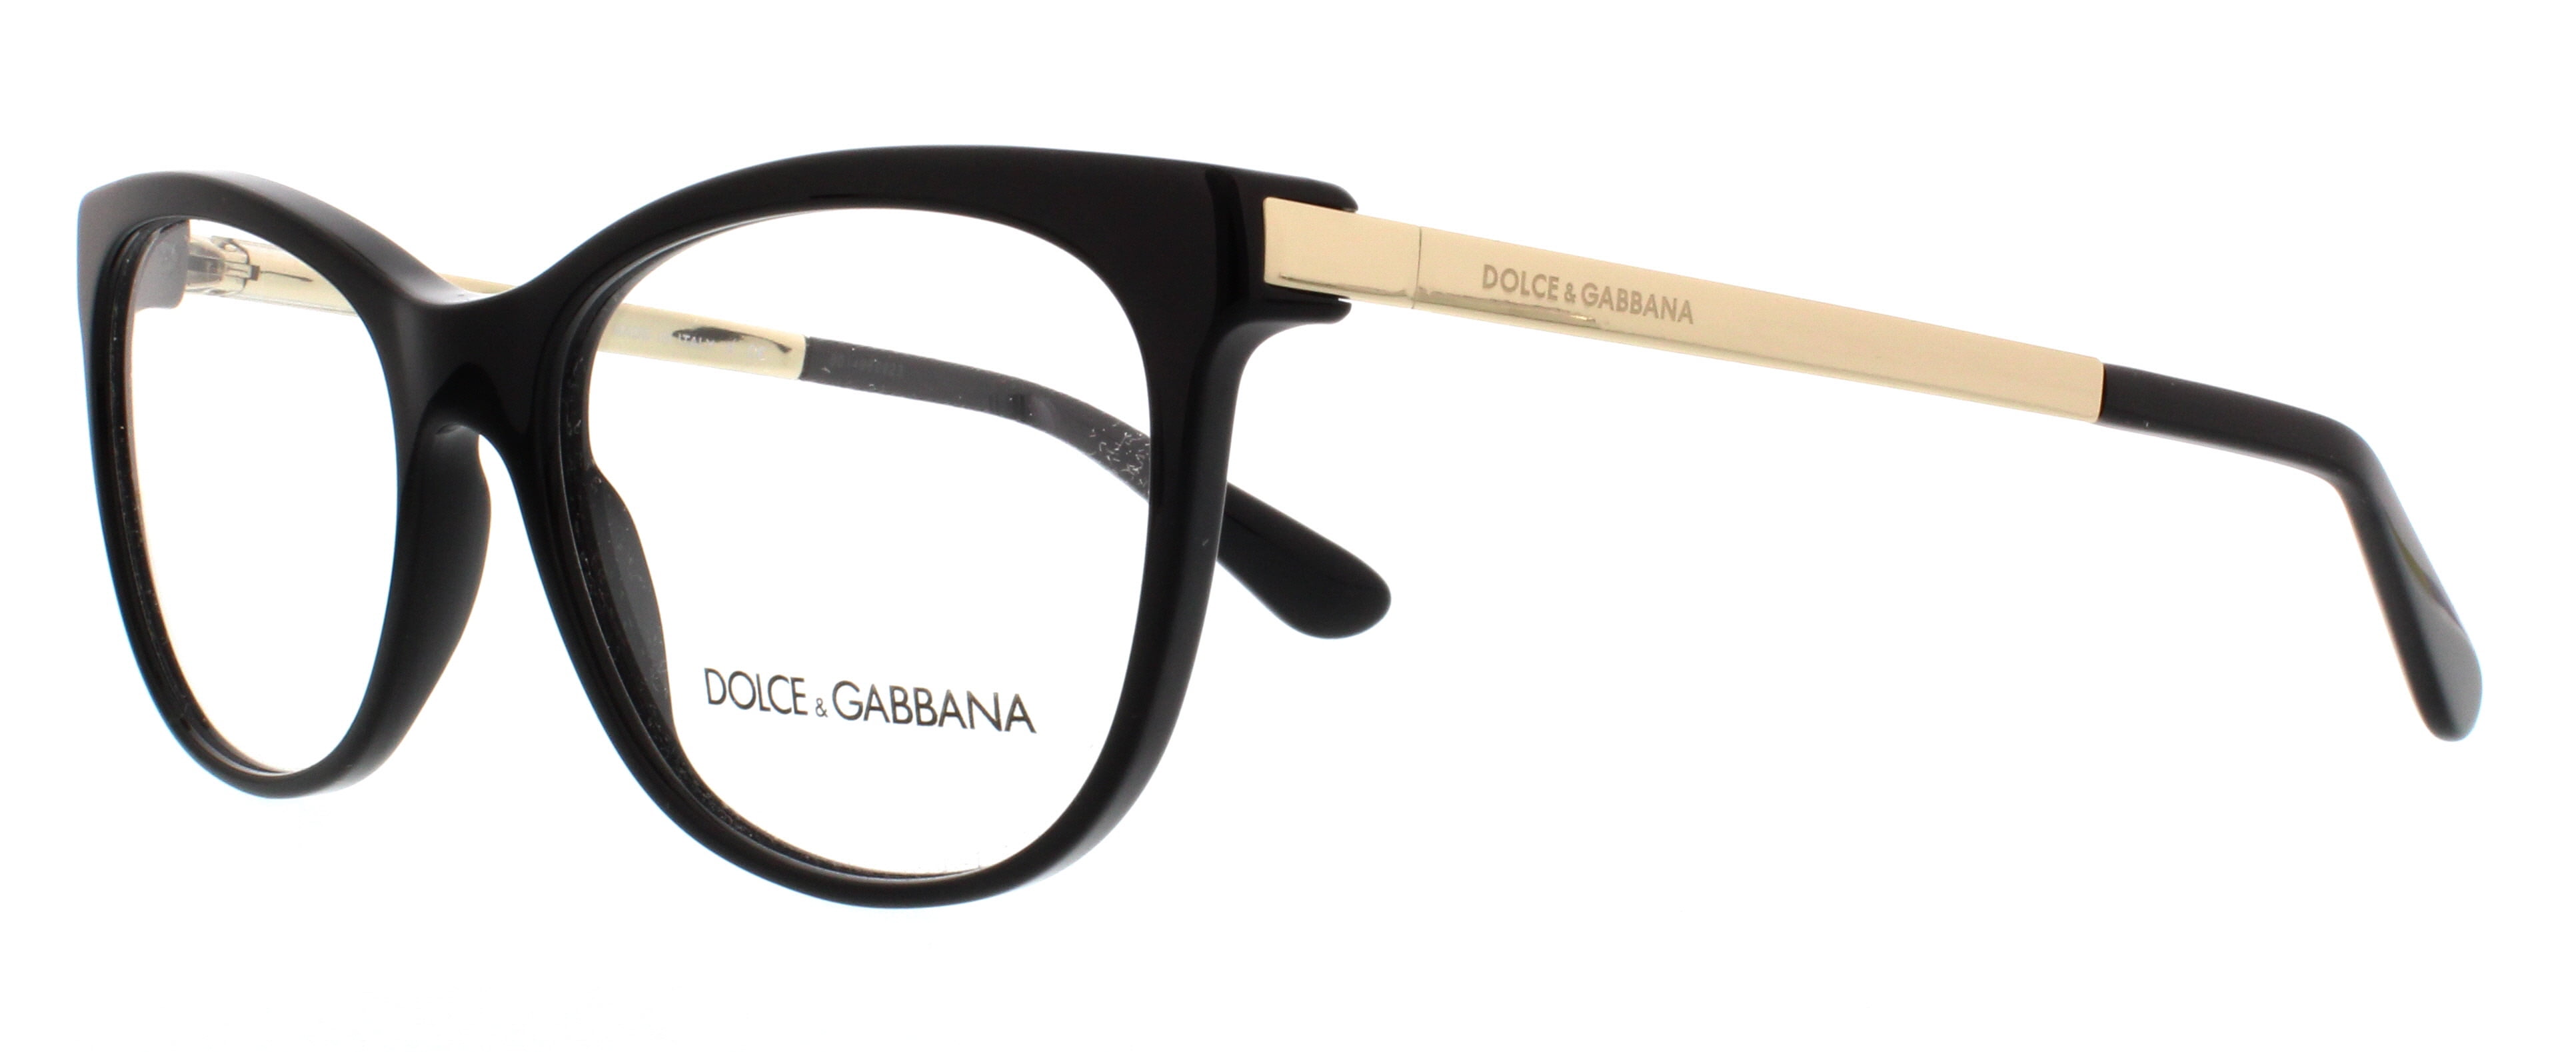 dolce and gabbana prescription glasses